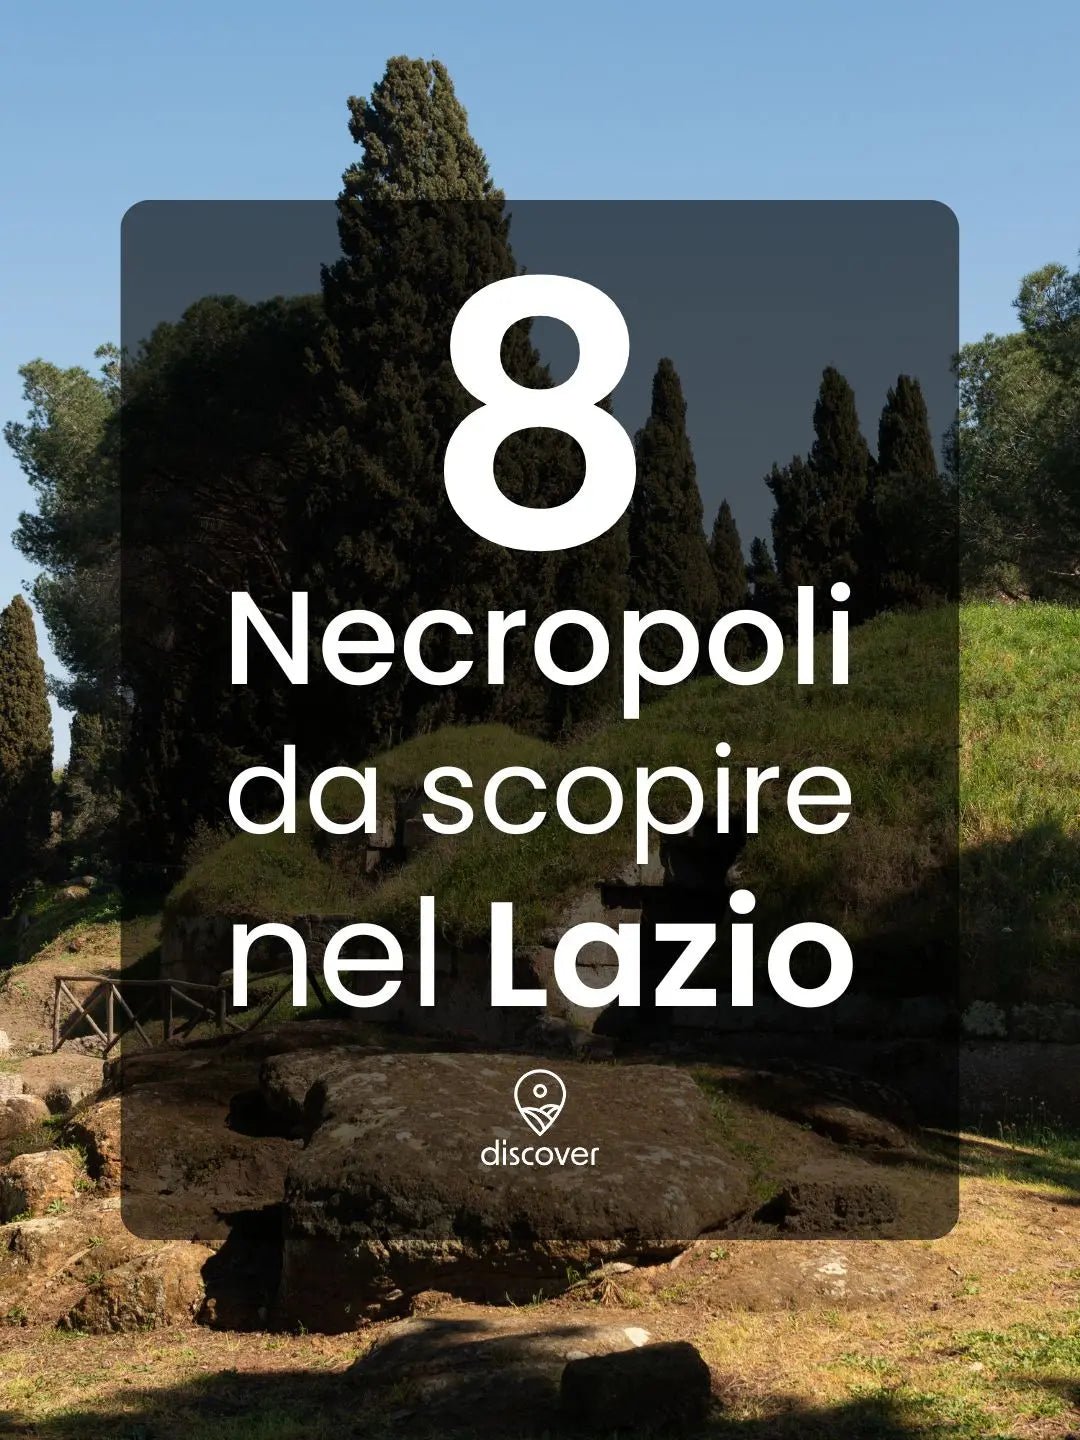 8 Necropoli da scoprire nel Lazio - Discover Experience